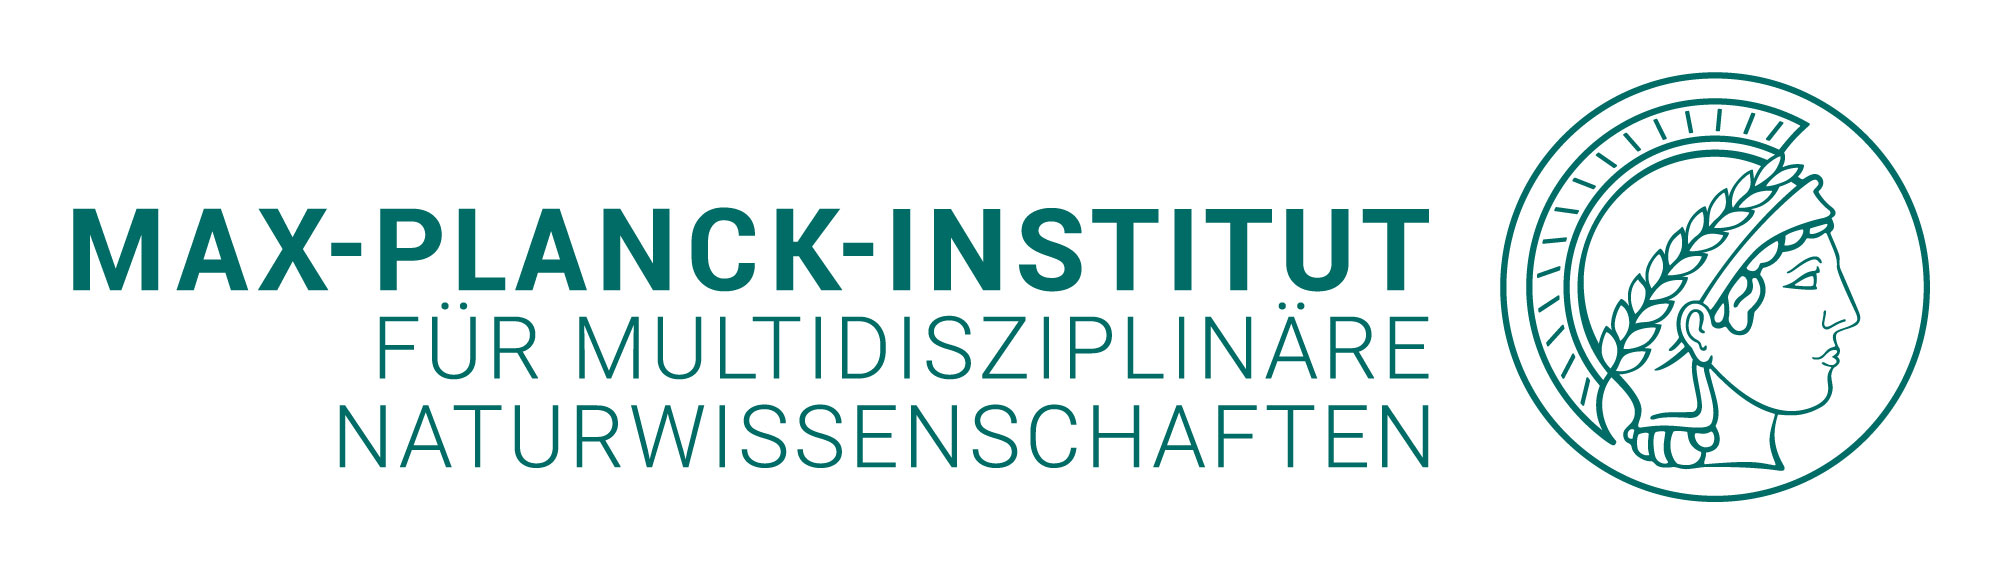 Logo: Max-Planck-Institut für Multidisziplinäre Naturwissenschaften